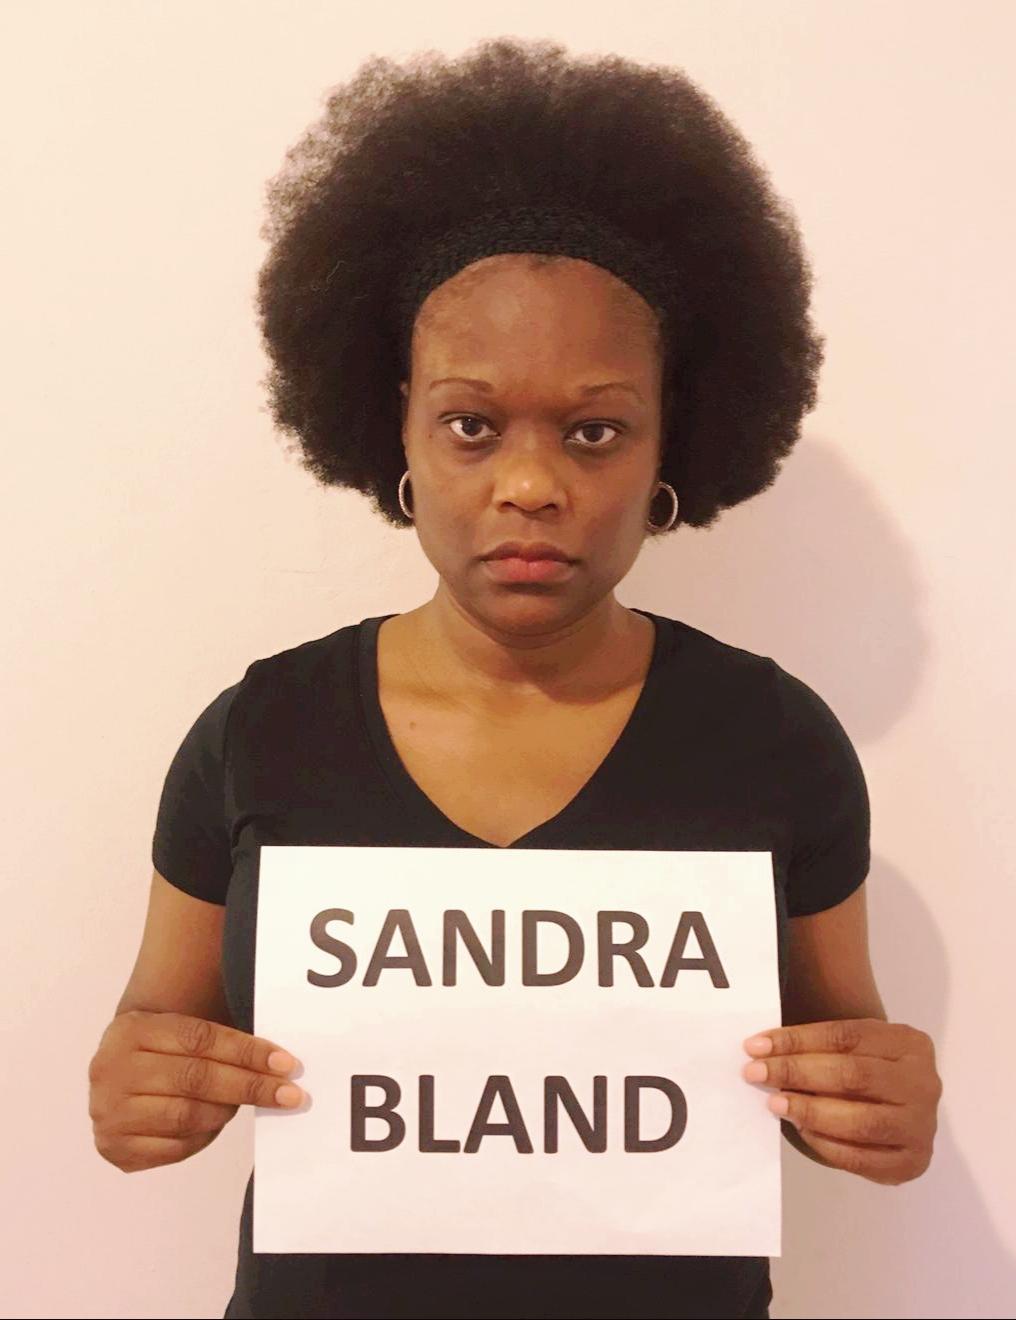 Sandra Bland